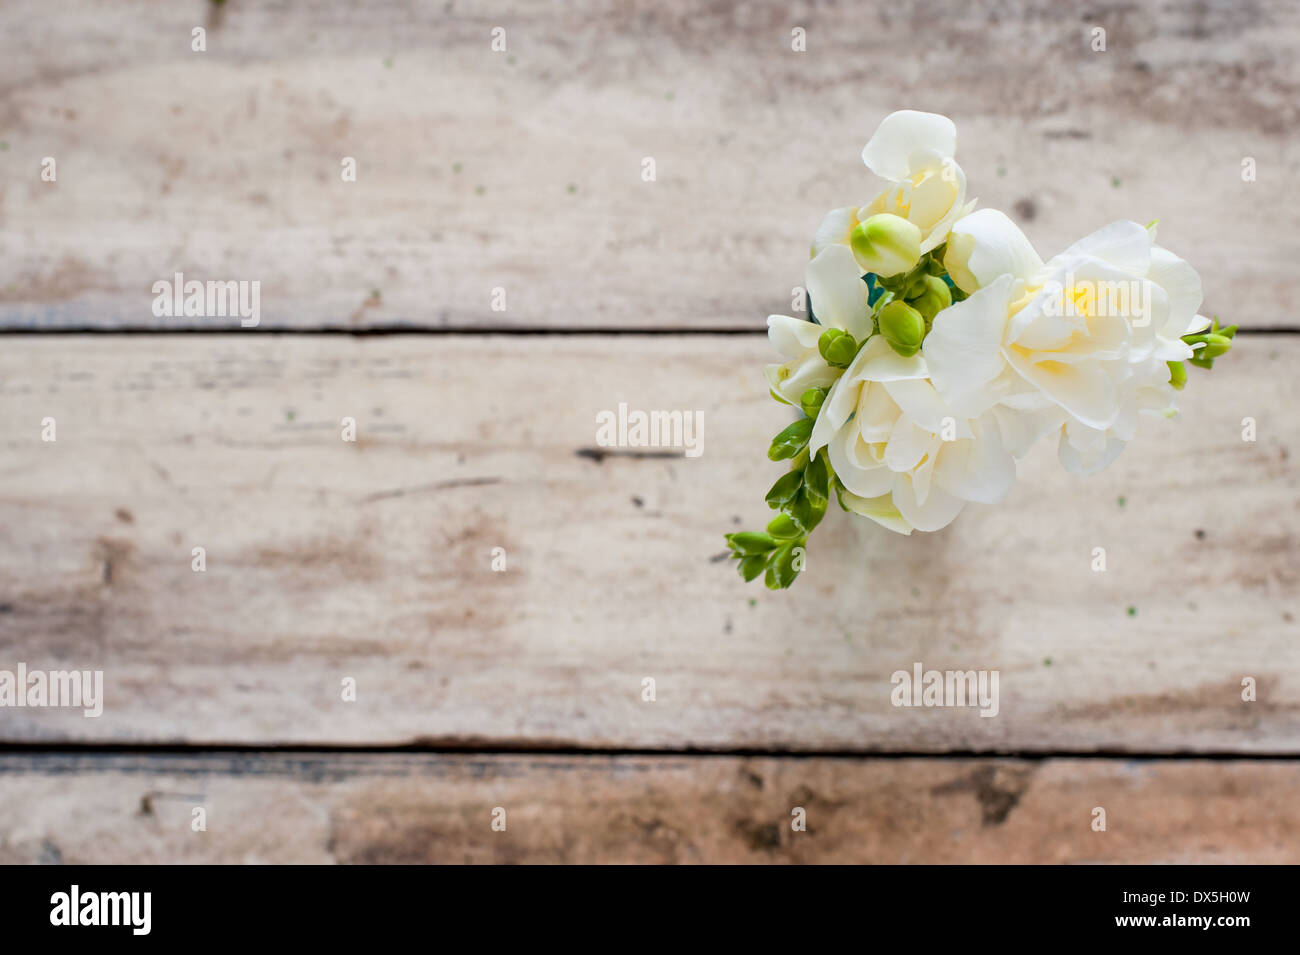 Fresia blanca en un pequeño florero, sobre una tabla de madera desgastada vintage Foto de stock